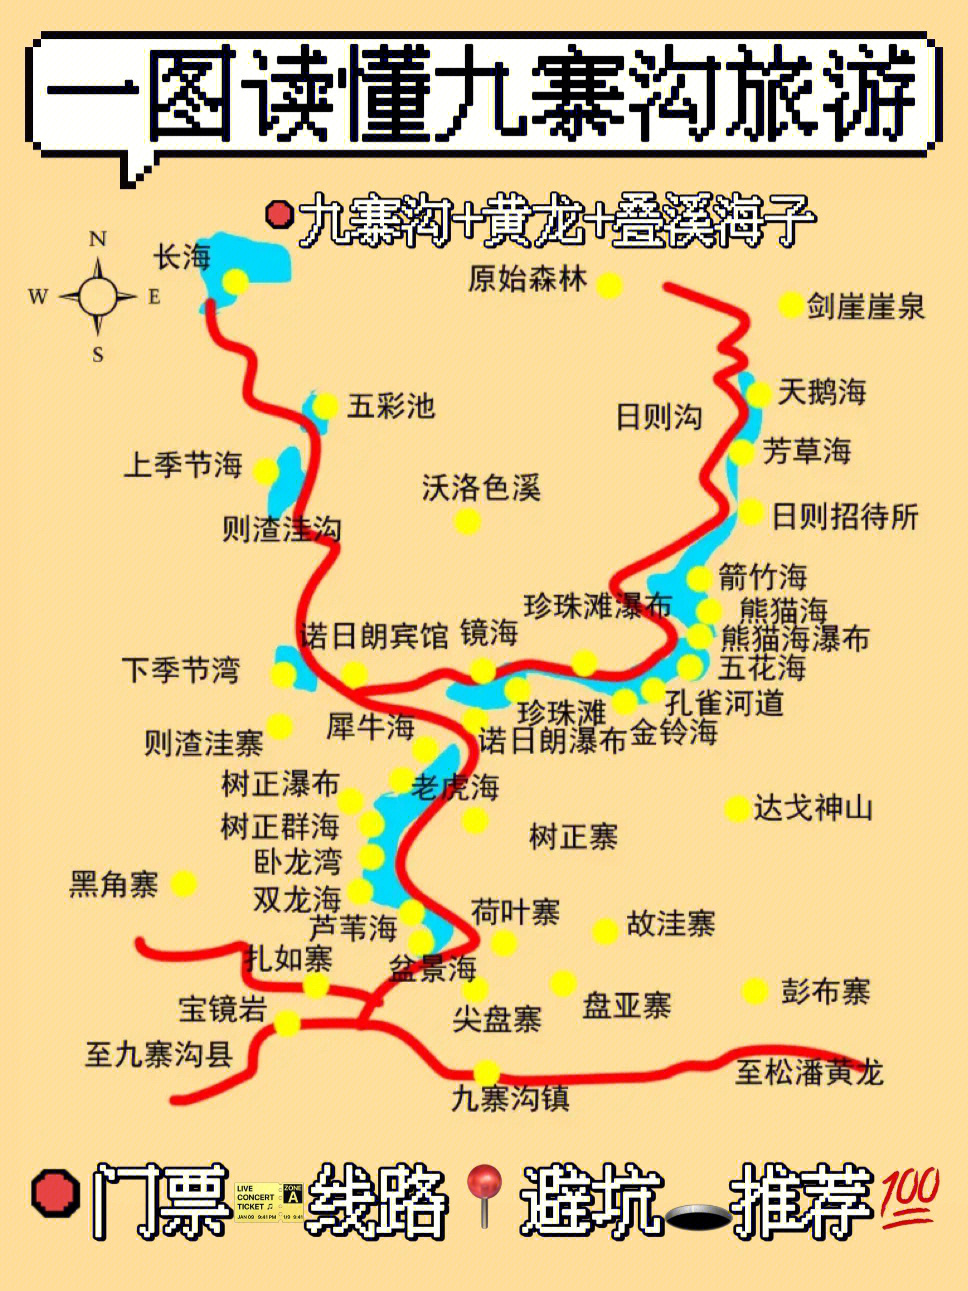 九寨沟景区地图高清版图片